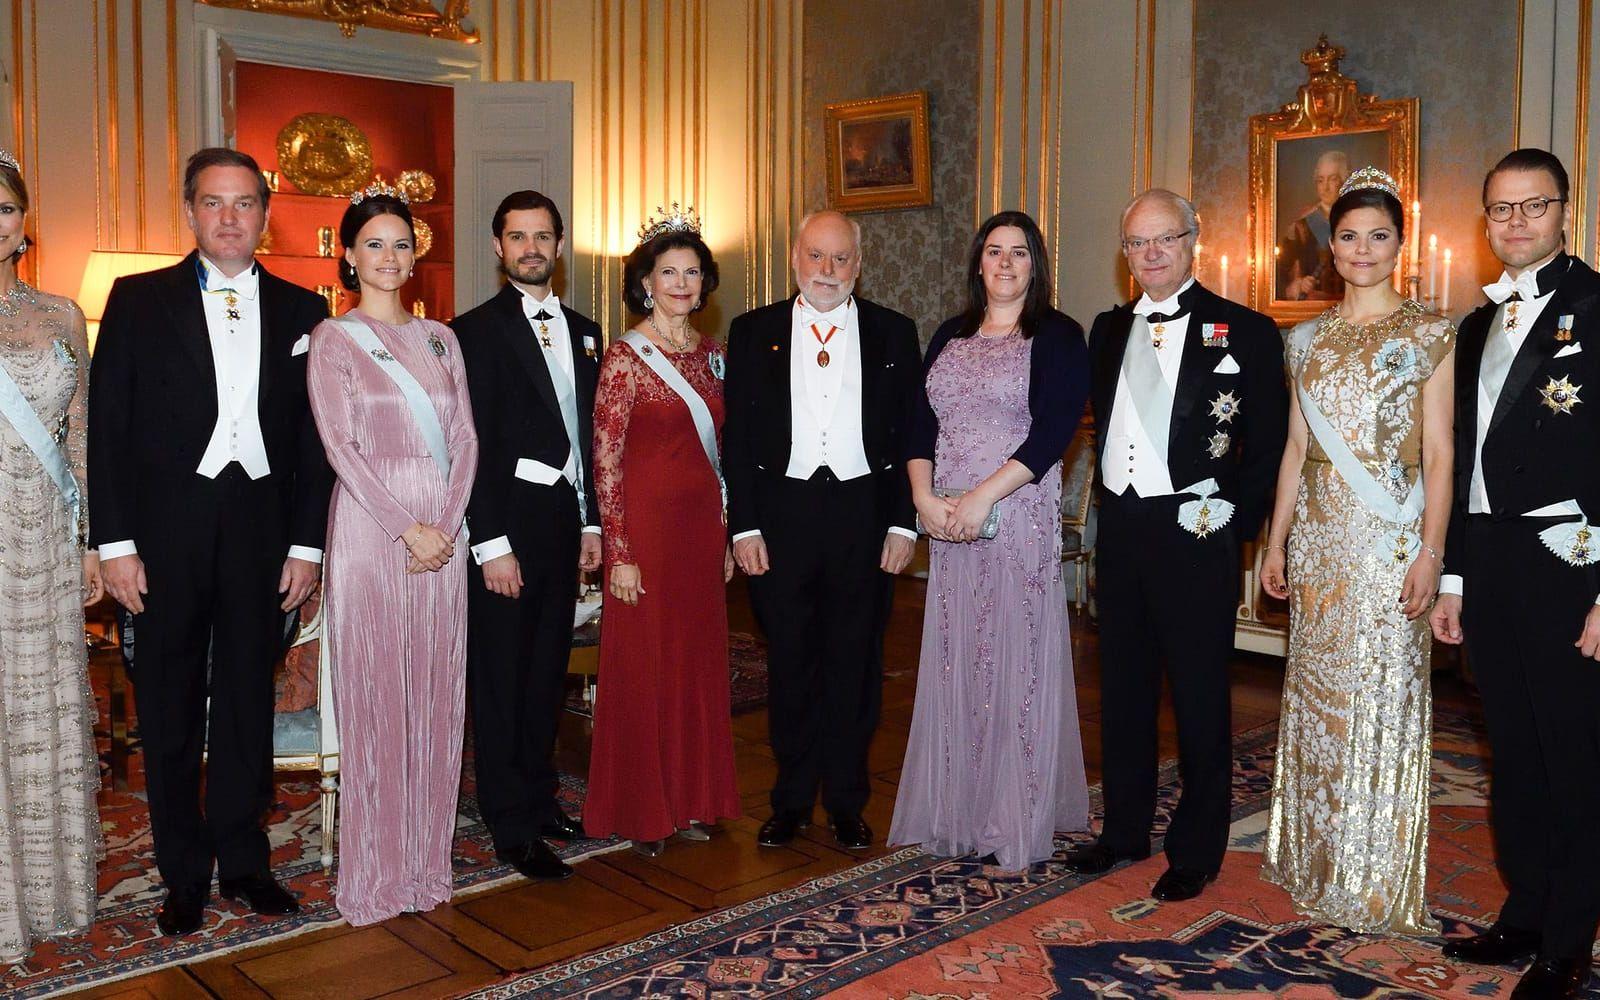 11 december: Kungaparet bjuder in till middag för Nobelpristagarna på Stockholms slott och kemipristagaren Fraser Stoddart med sällskap poserar med prinsessan Madeleine, Chris O’Neill, prinsessan Sofia, prins Carl Philip, kung Carl Gustaf, kronprinsessan Victoria och prins Daniel. Foto: TT